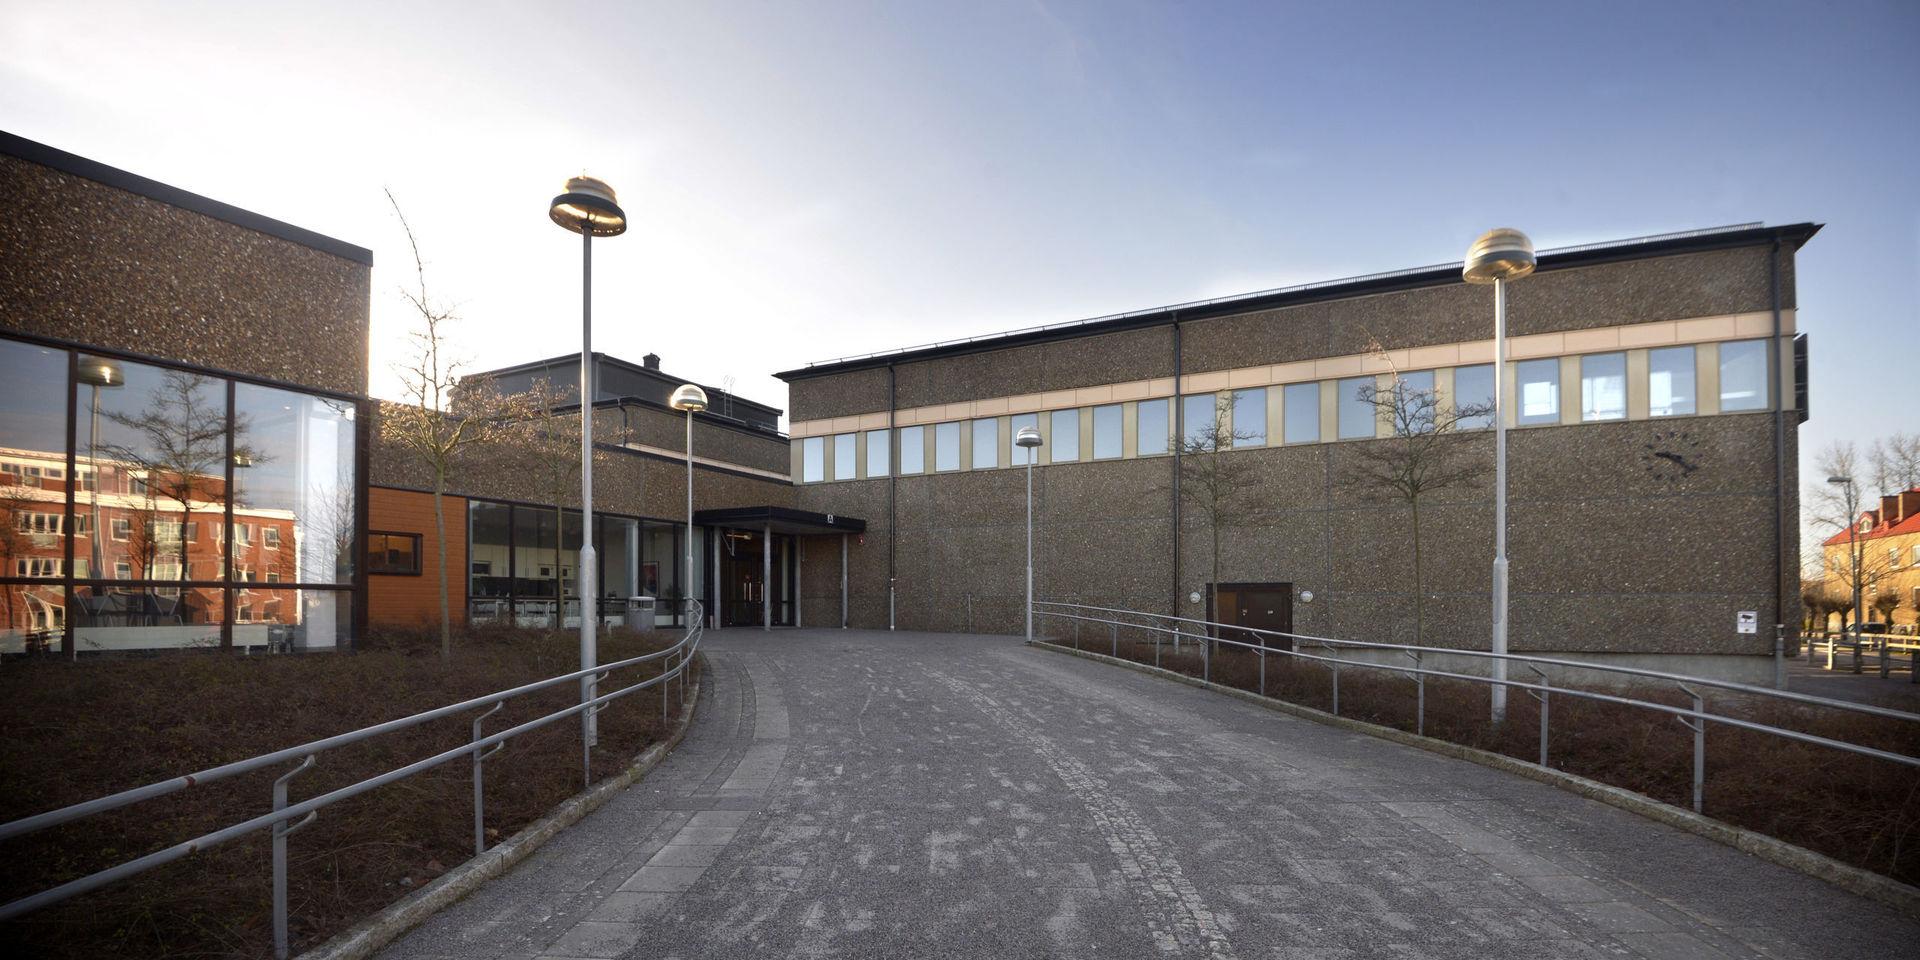 Ökat söktryck orsakar lokalbrist på Peder Skrivares skola i Varberg.